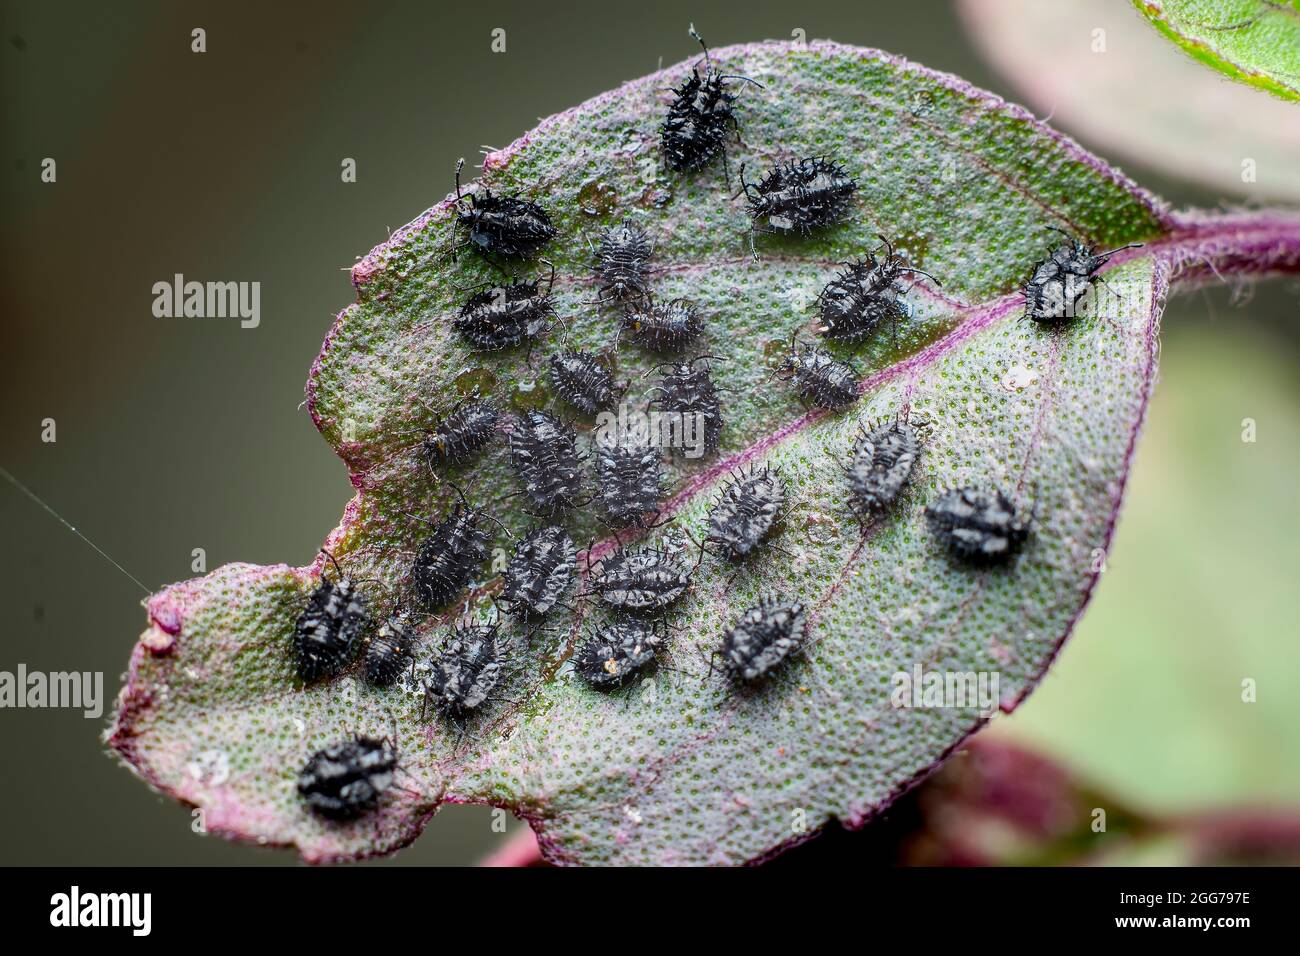 La colonie de nymphes de psyllides noires sur la feuille de la plante sainte de basilic.Ces insectes sont également connus sous le nom de poux de plante de saut.Ces insectes endommagent les feuilles. Banque D'Images